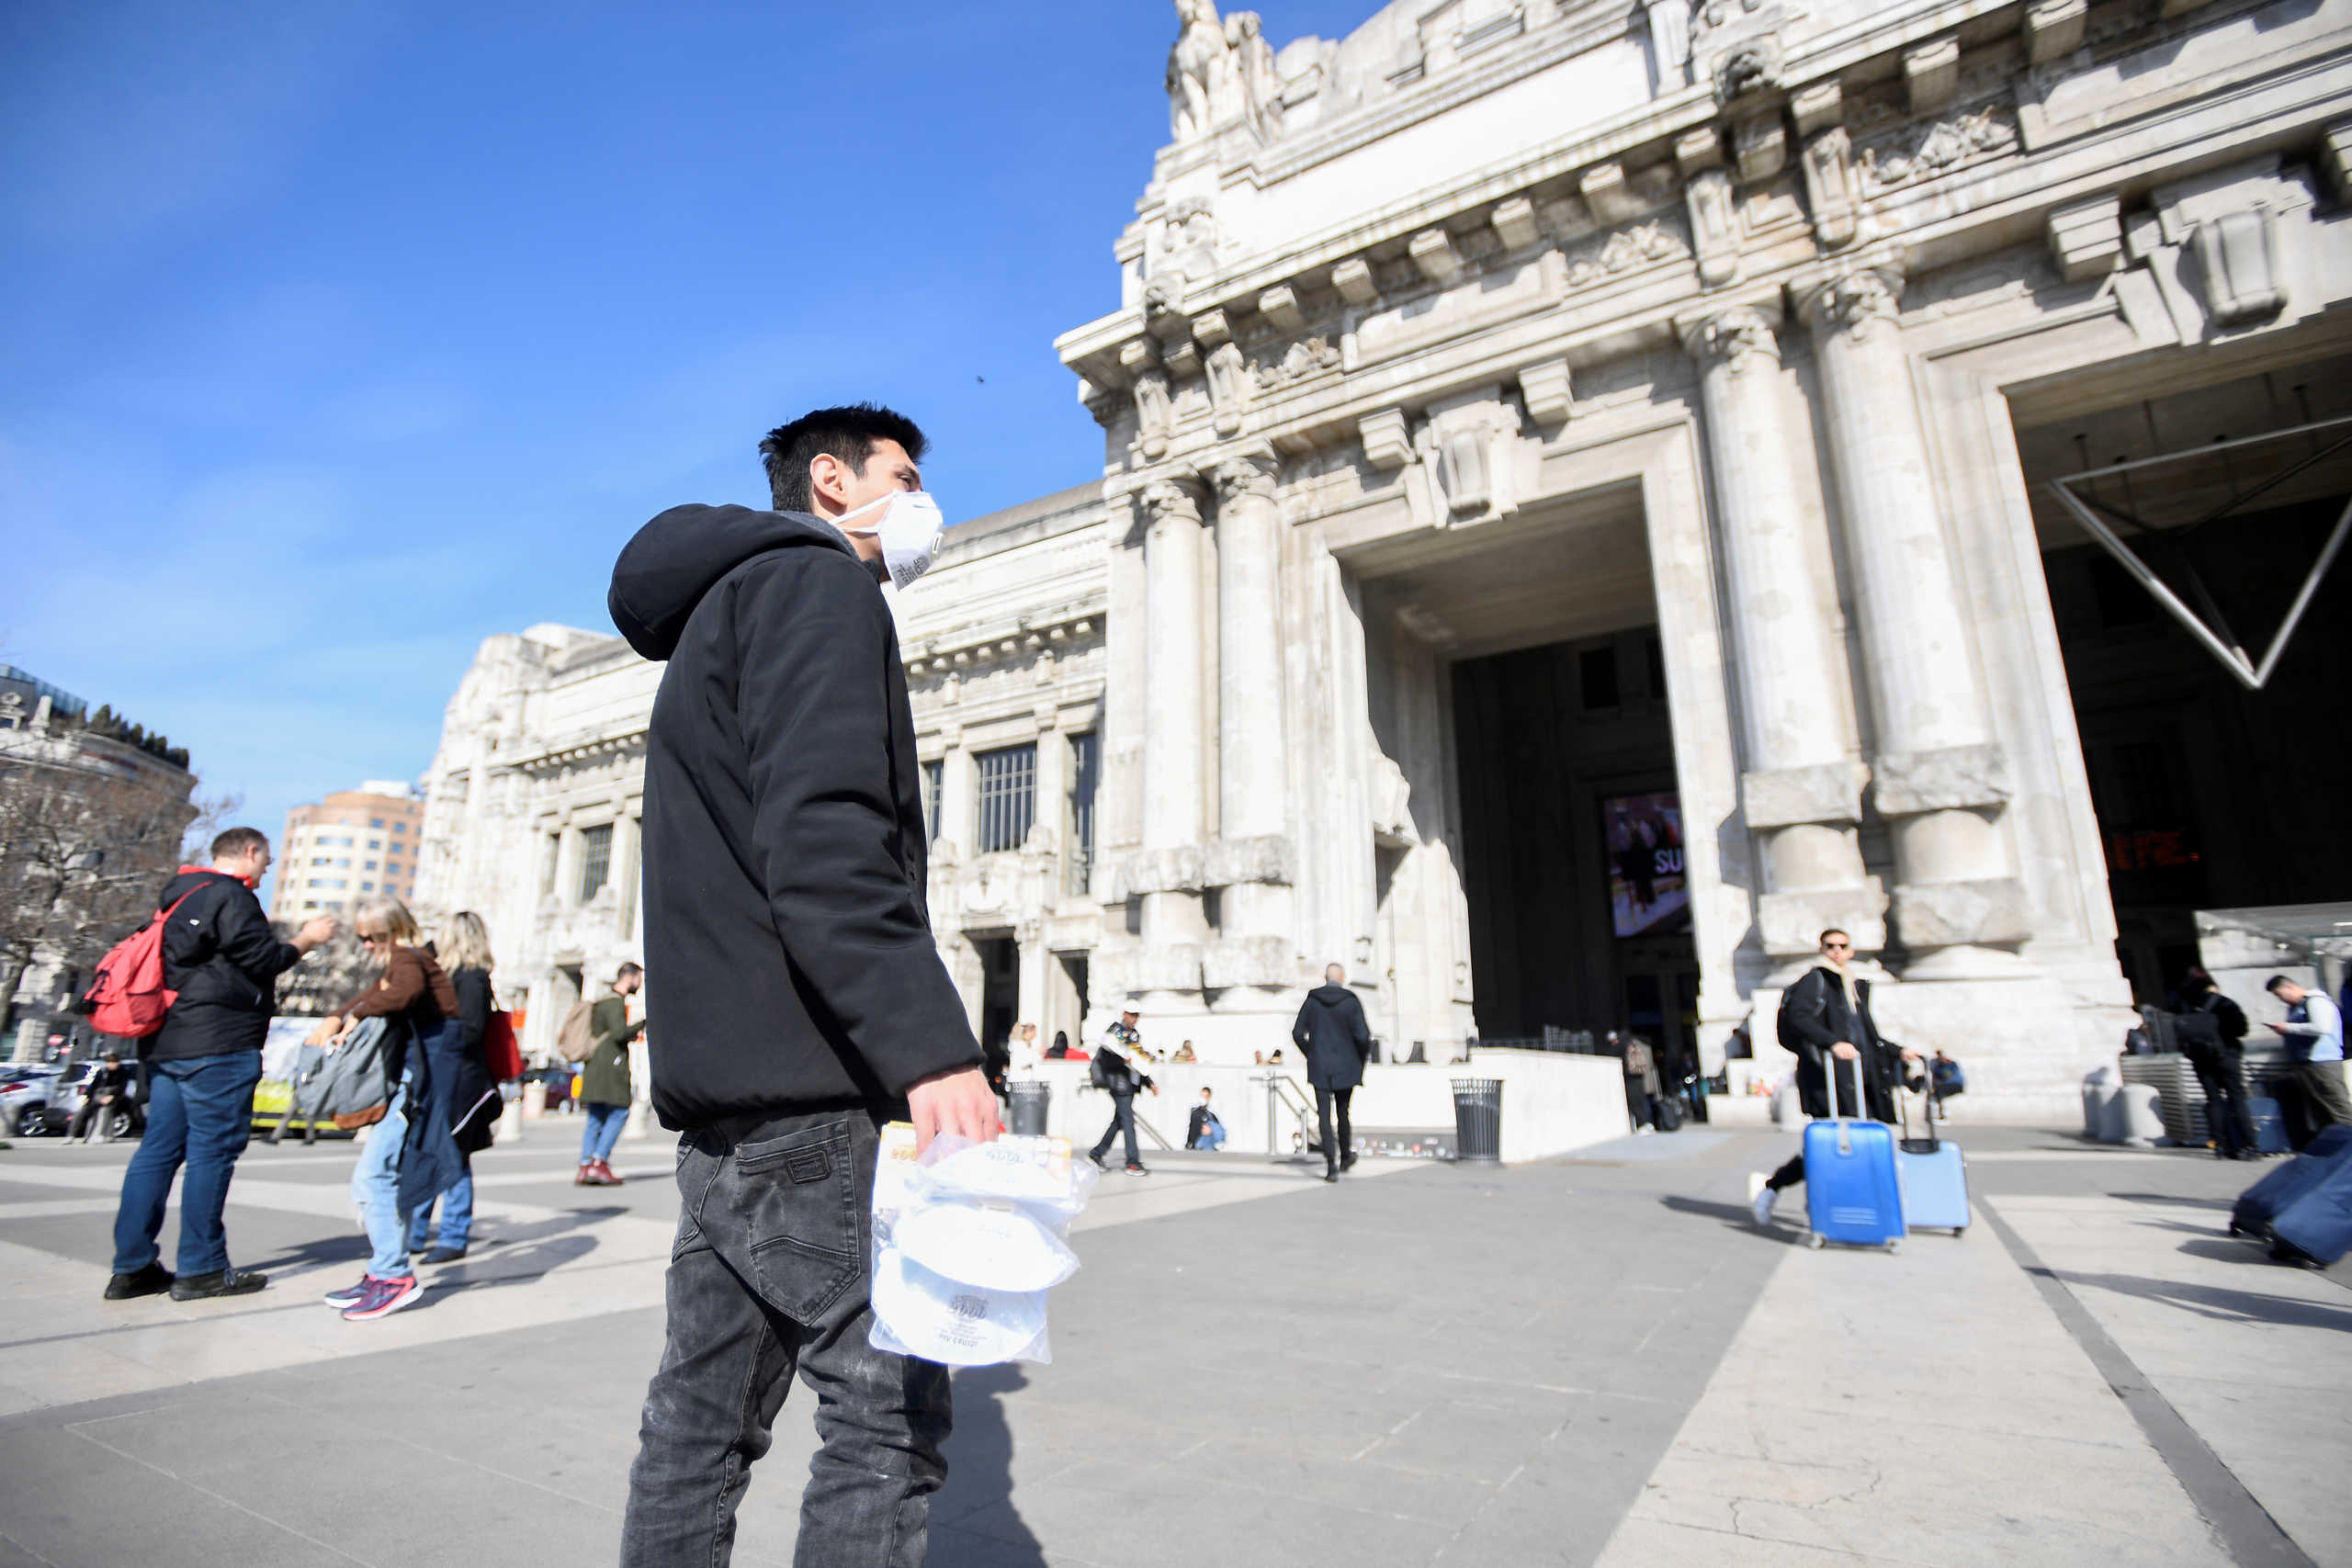 Ο κορονοϊός «μολύνει» την Ευρώπη! 12ος νεκρός στην Ιταλία, δυο θύματα στη Γαλλία